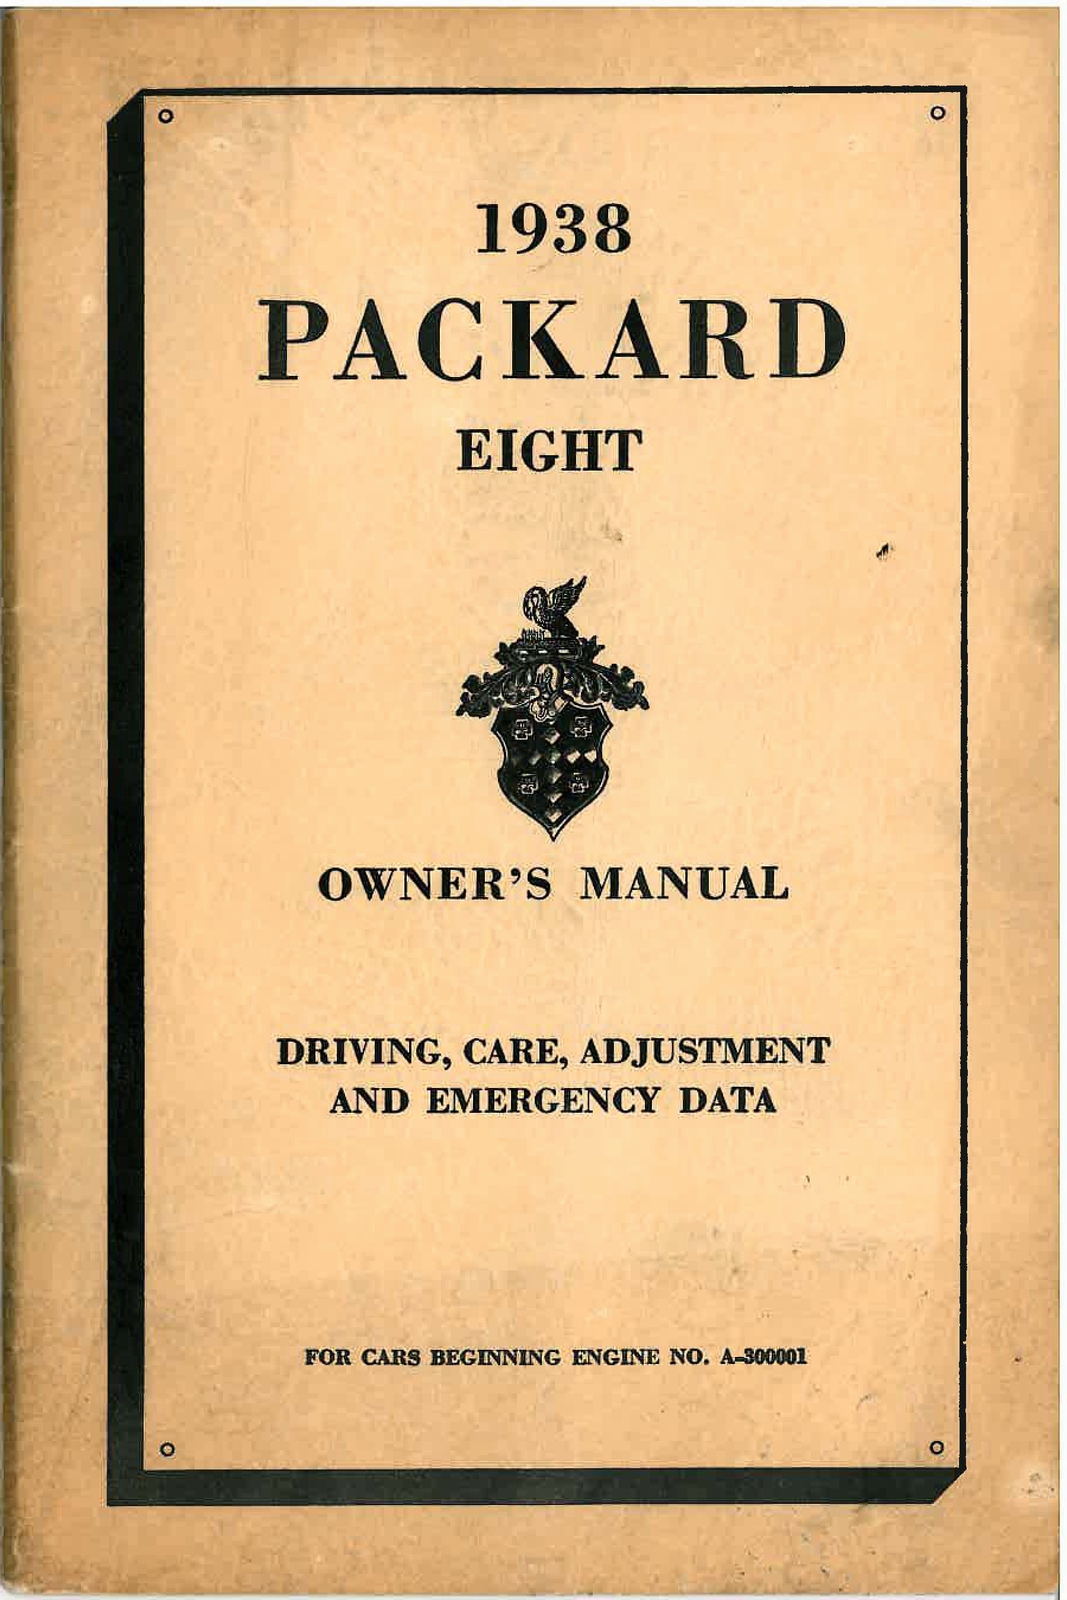 n_1938 Packard Eight Manual-00.jpg